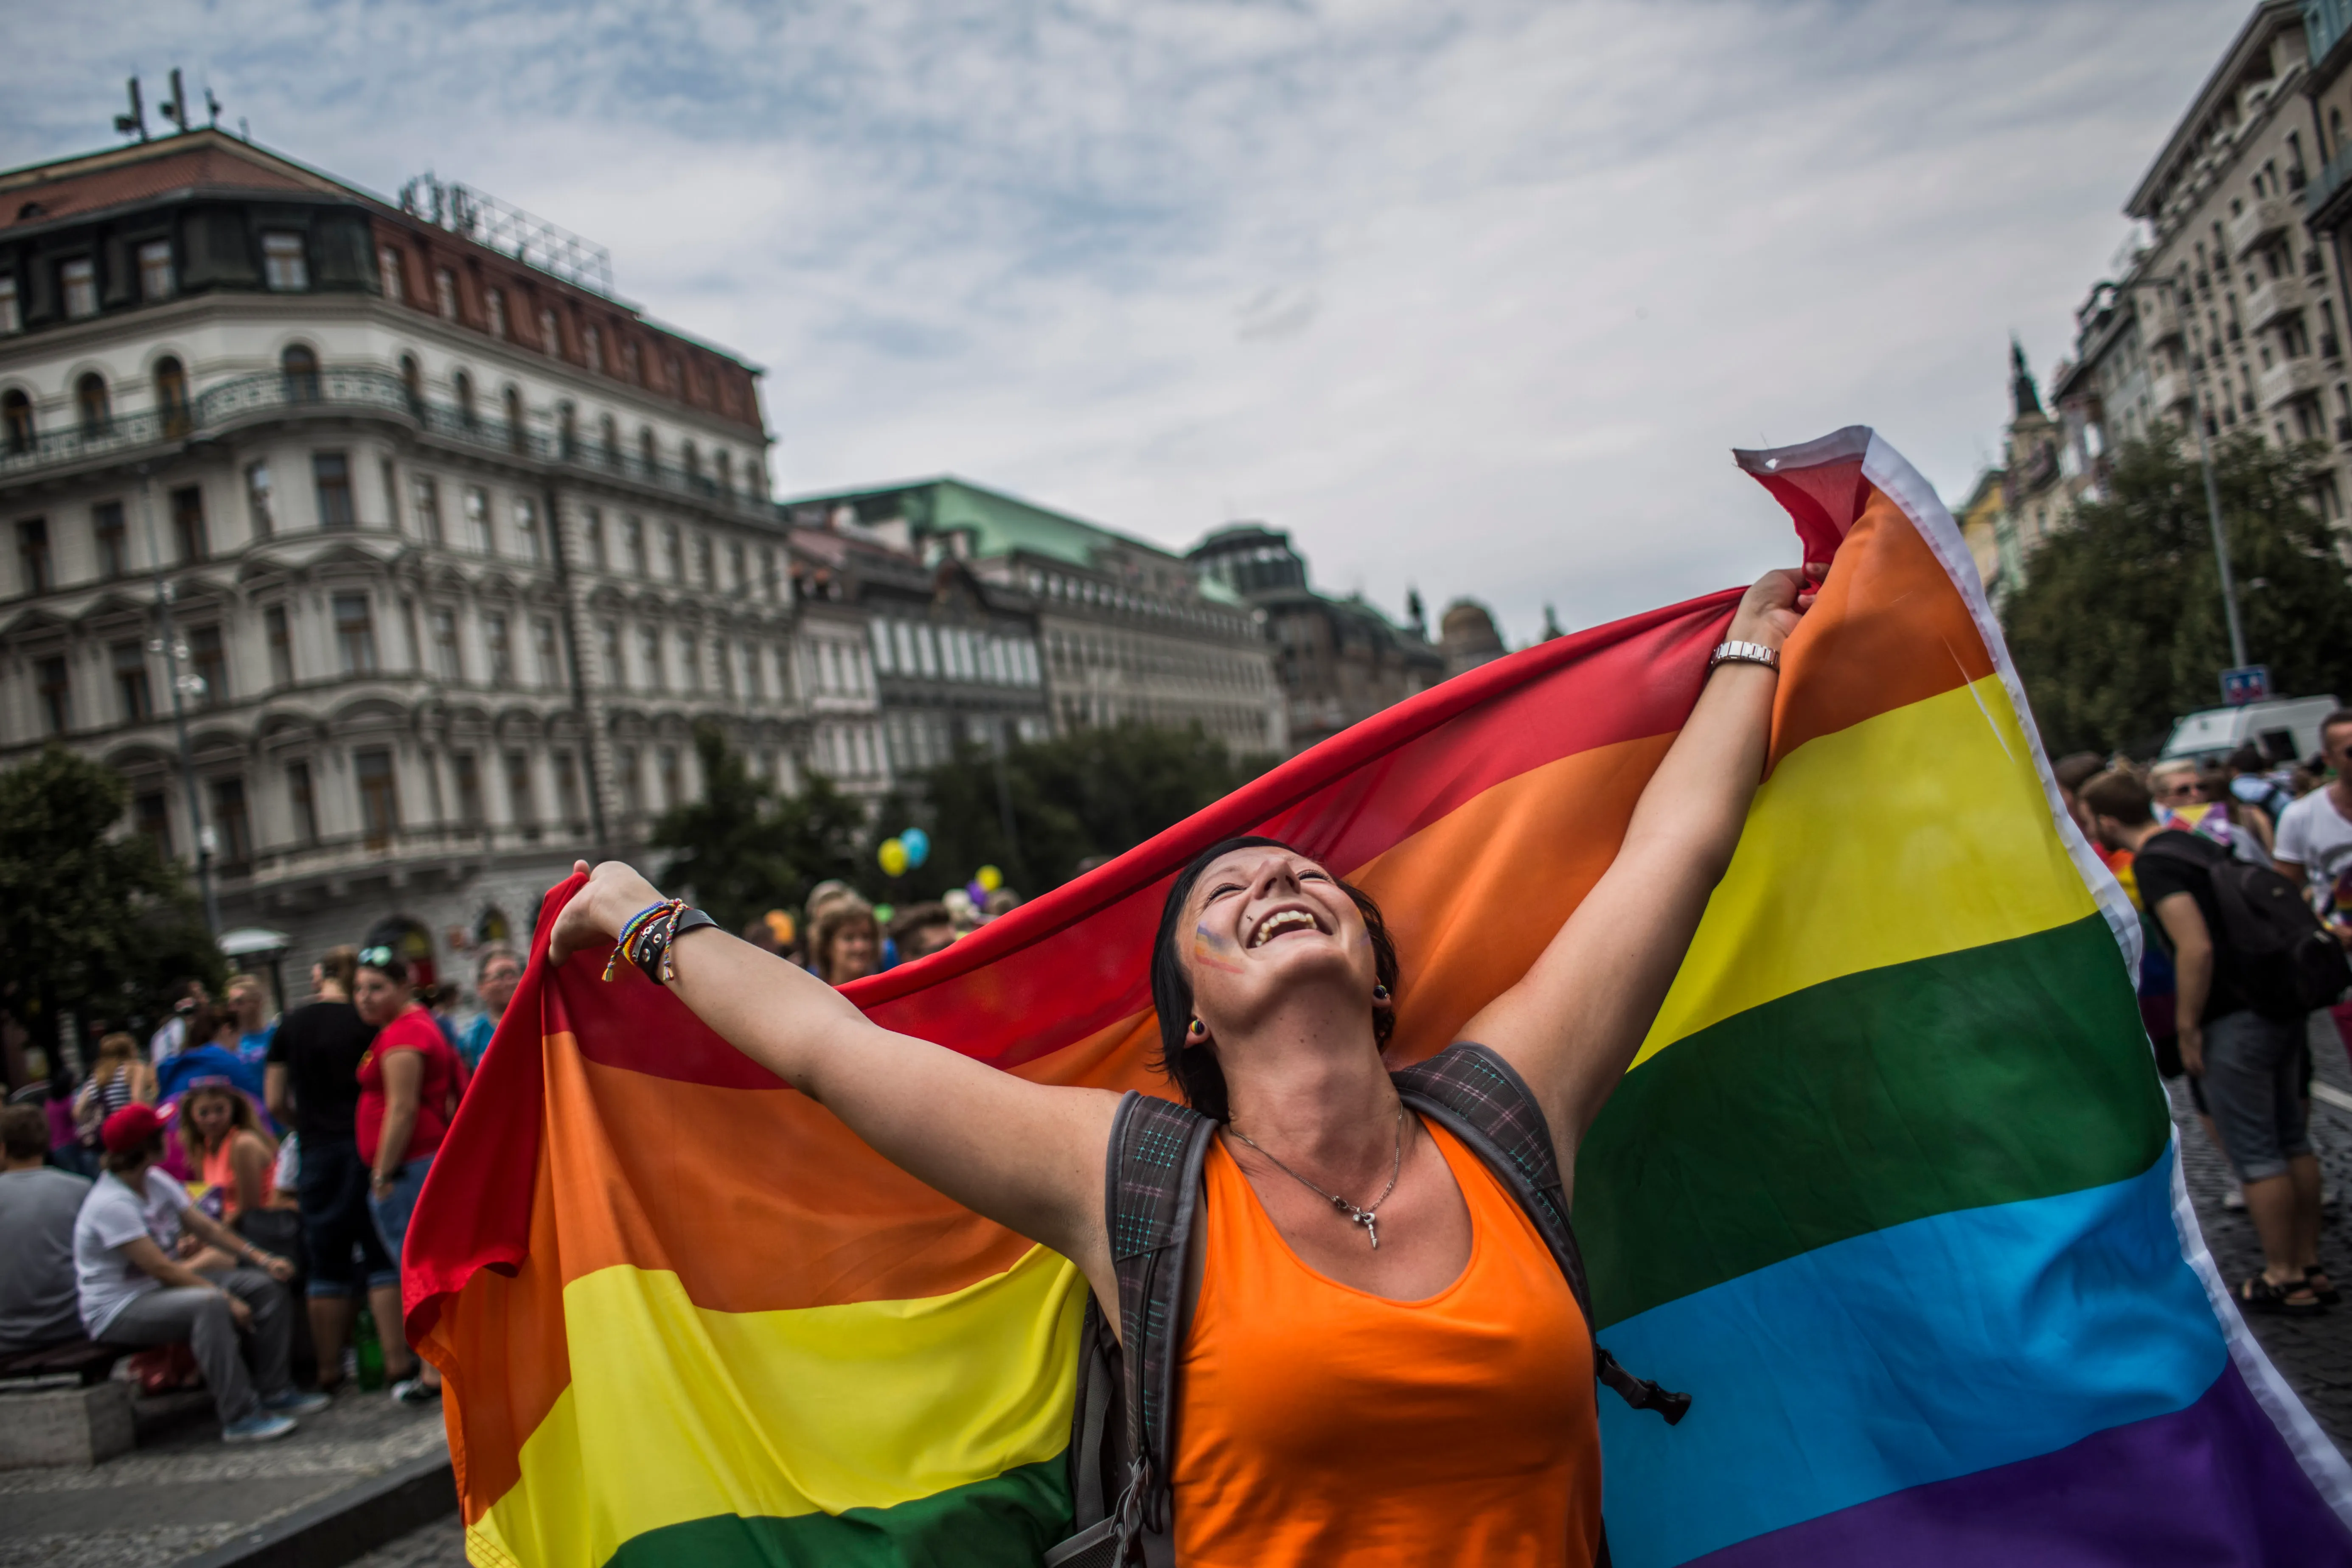 La República Checa aprueba la ampliación de la unión para parejas del mismo sexo, pero no incluye el matrimonio